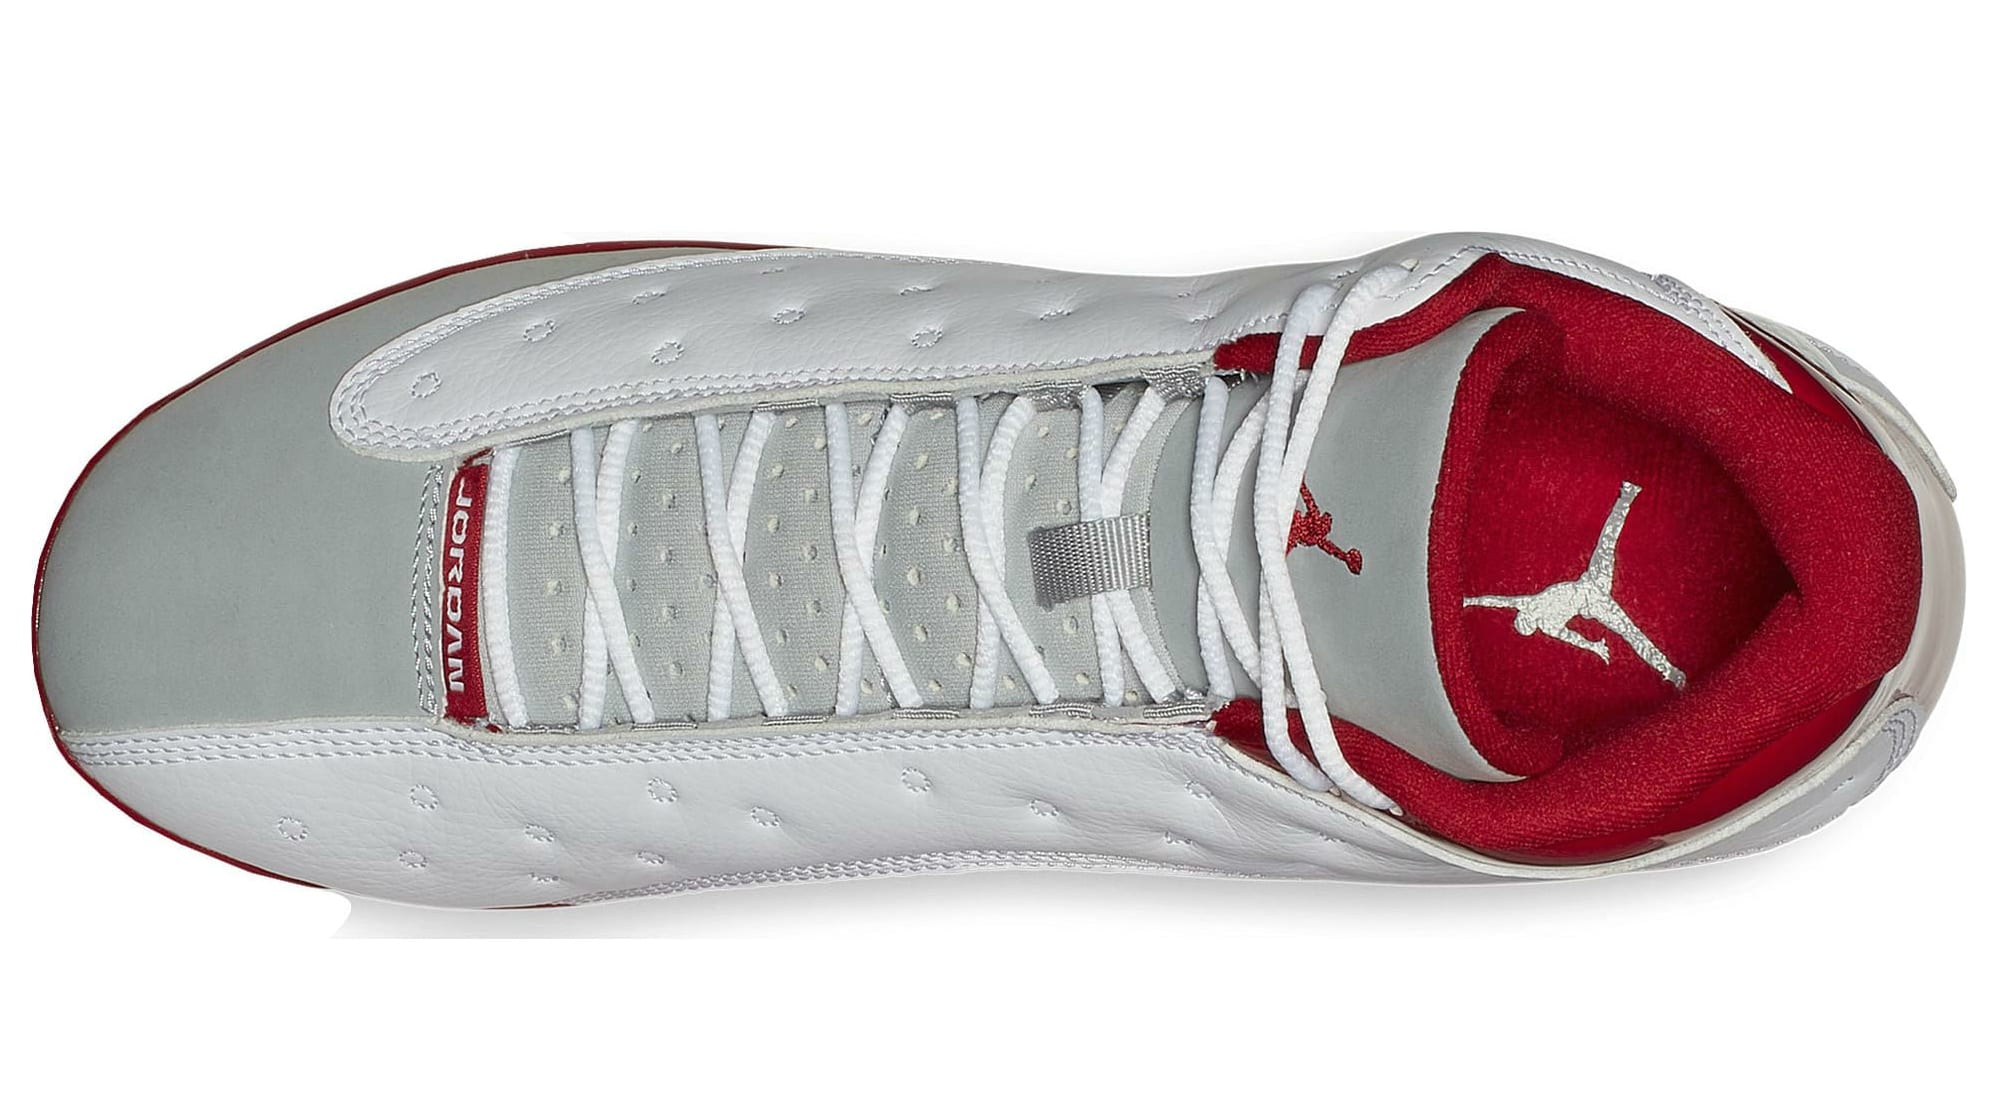 Air Jordan 13 Grey Toe Baseball Cleats Top